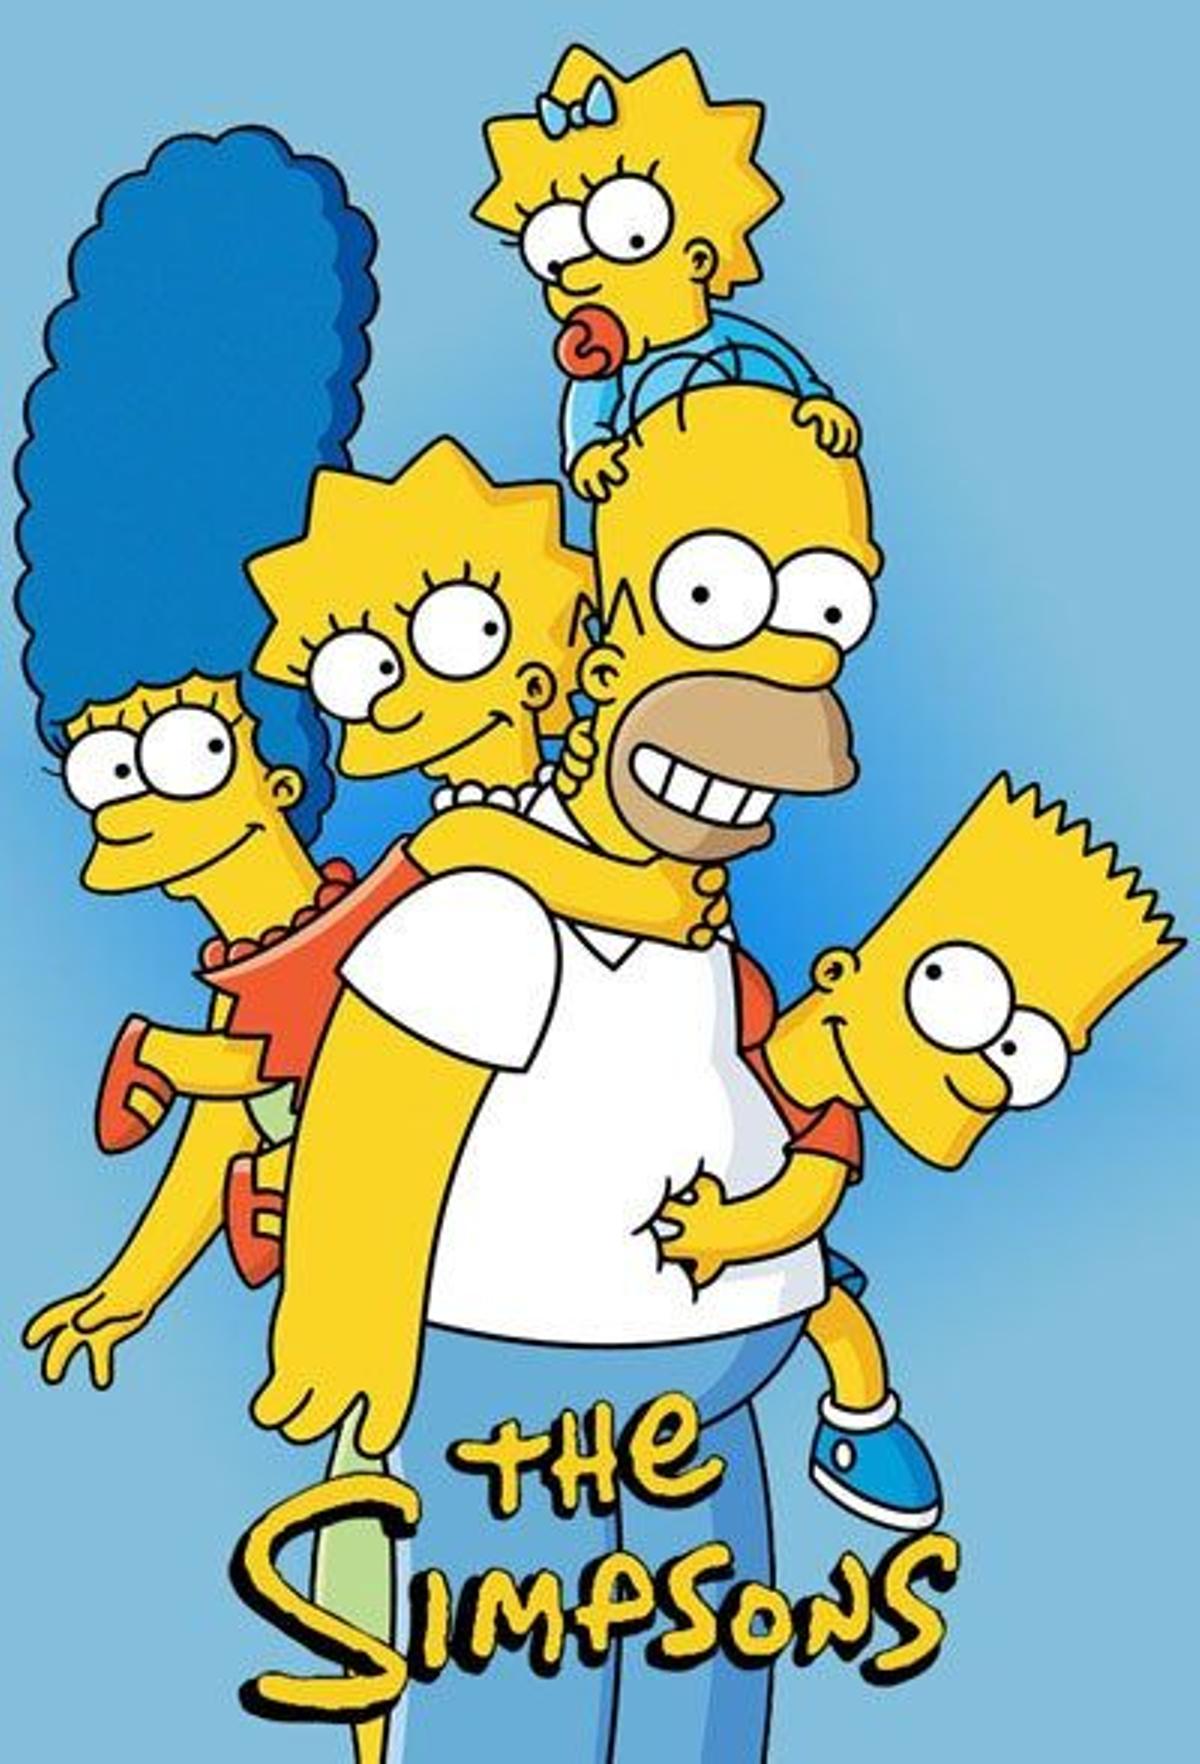 6. 'Los Simpsons'